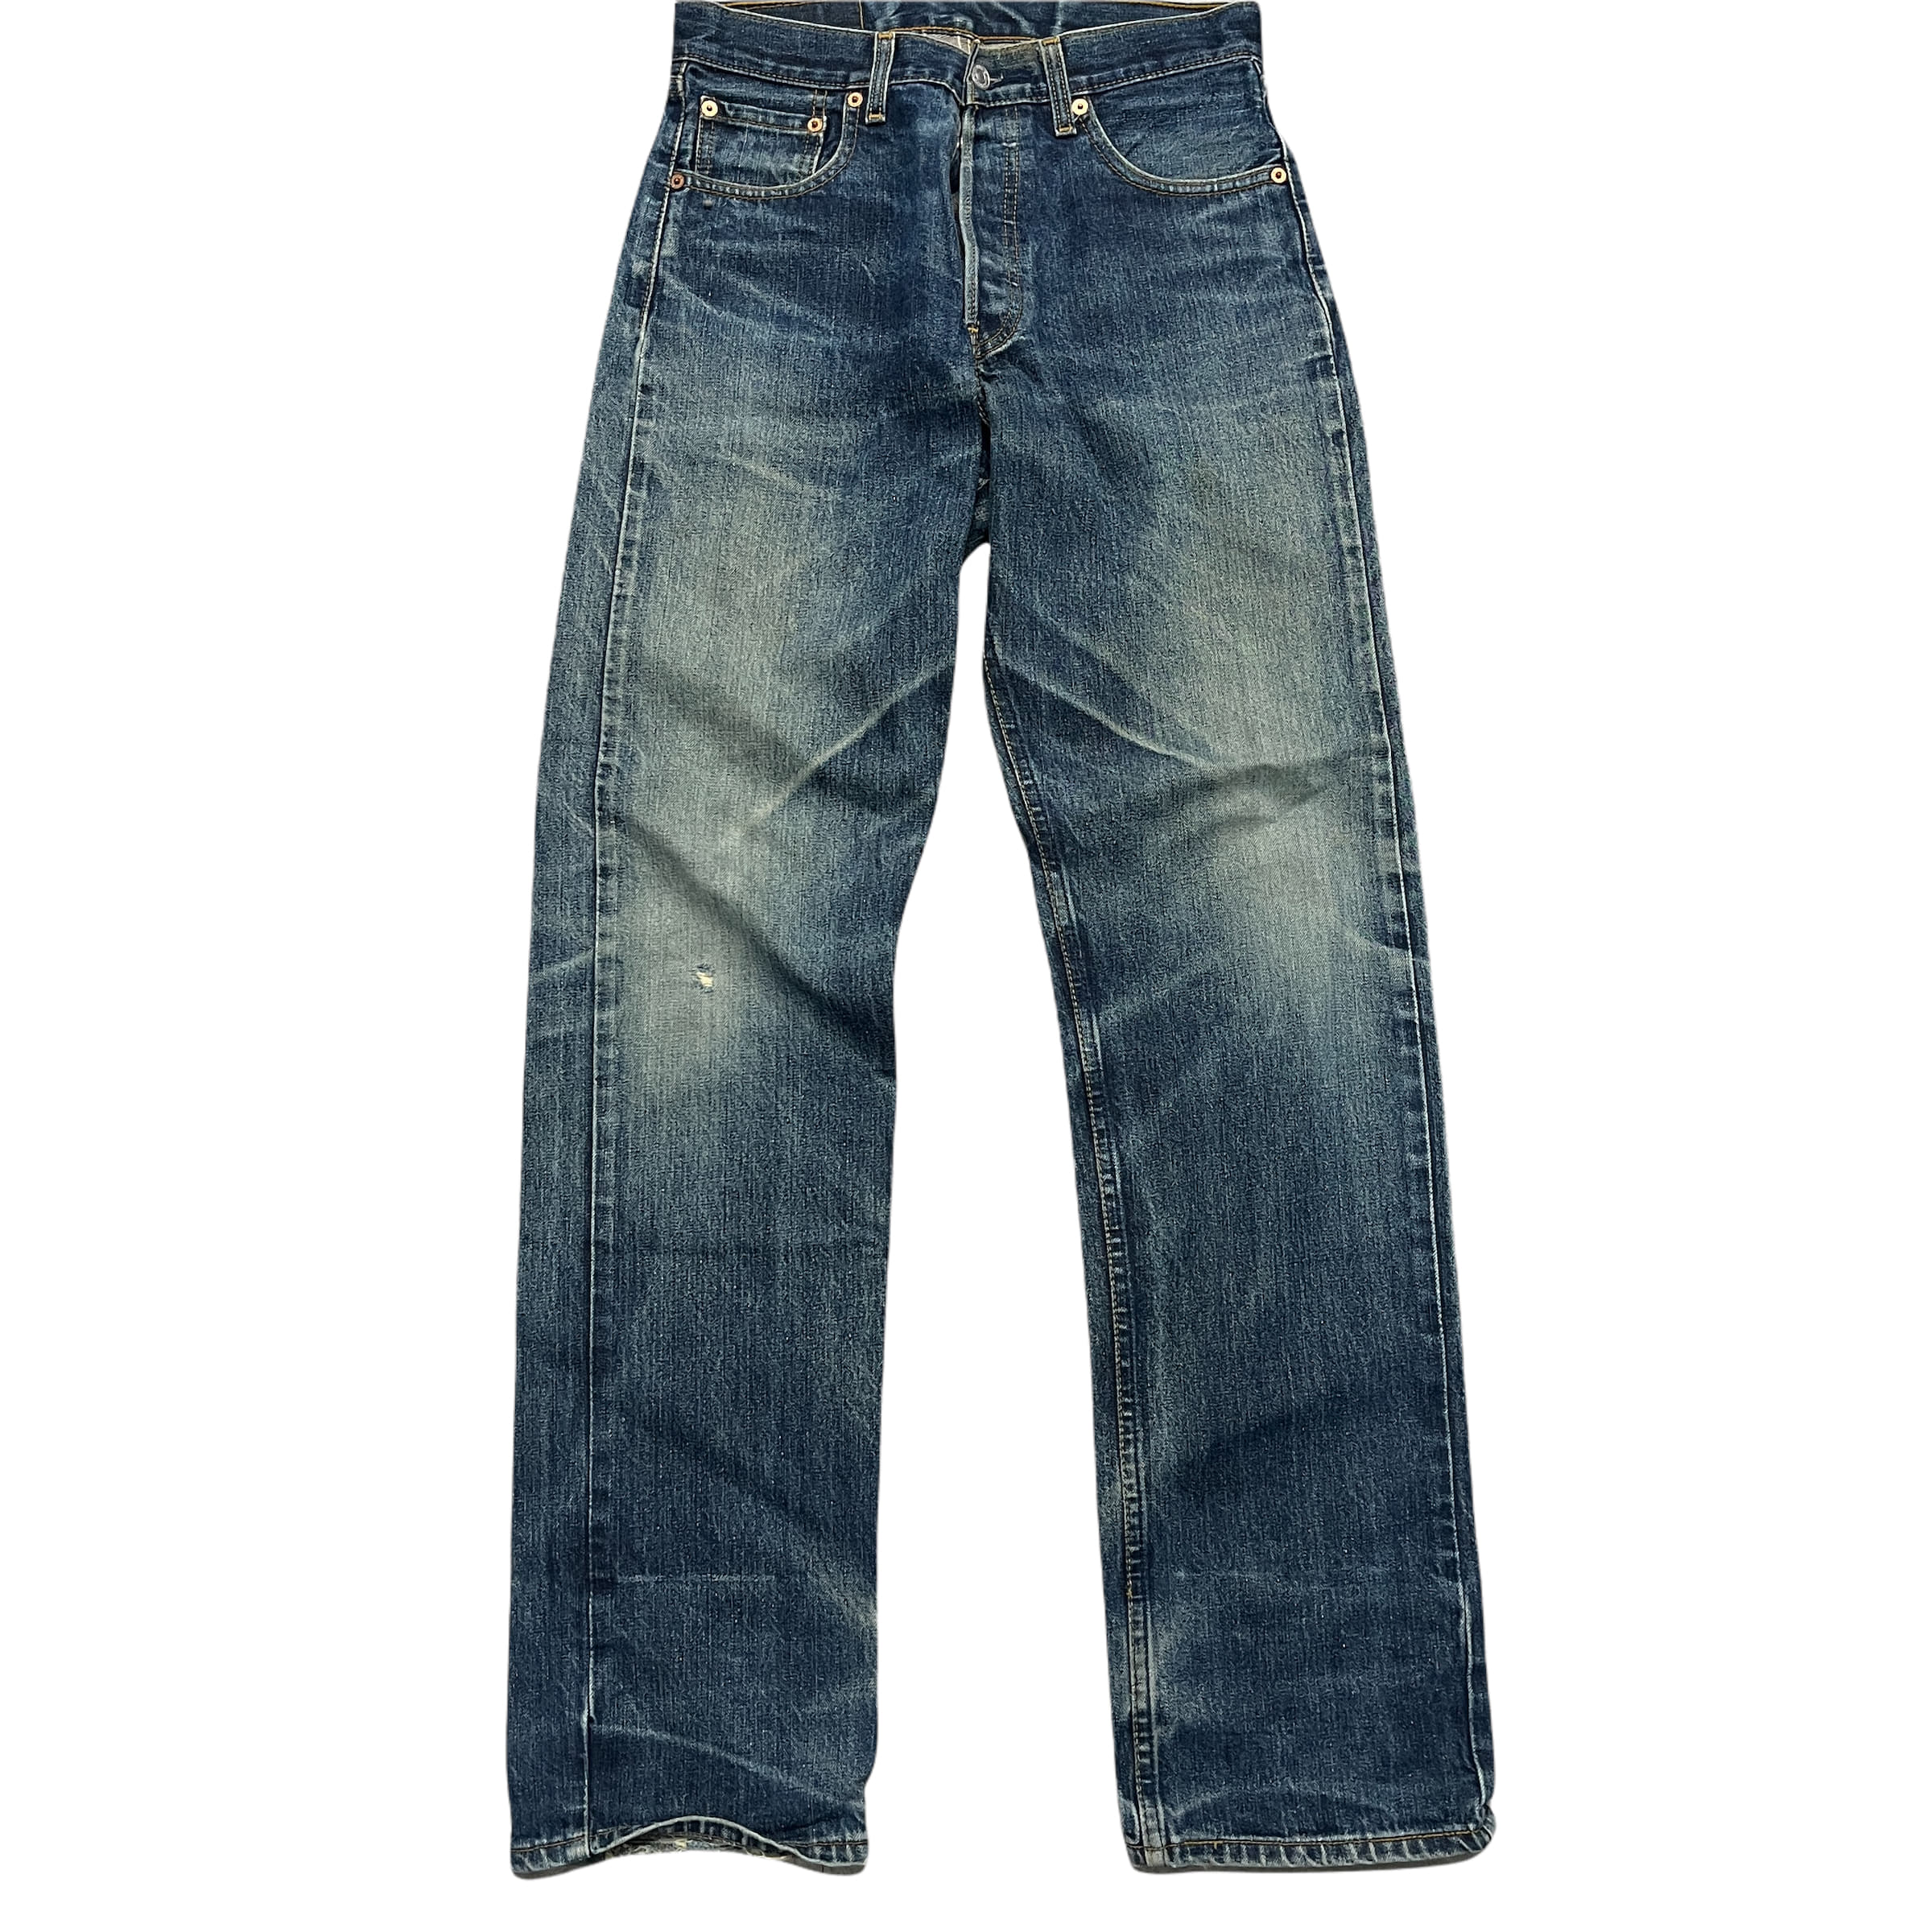 [Levis] 509 Denim Jeans-Size W 30 L 34